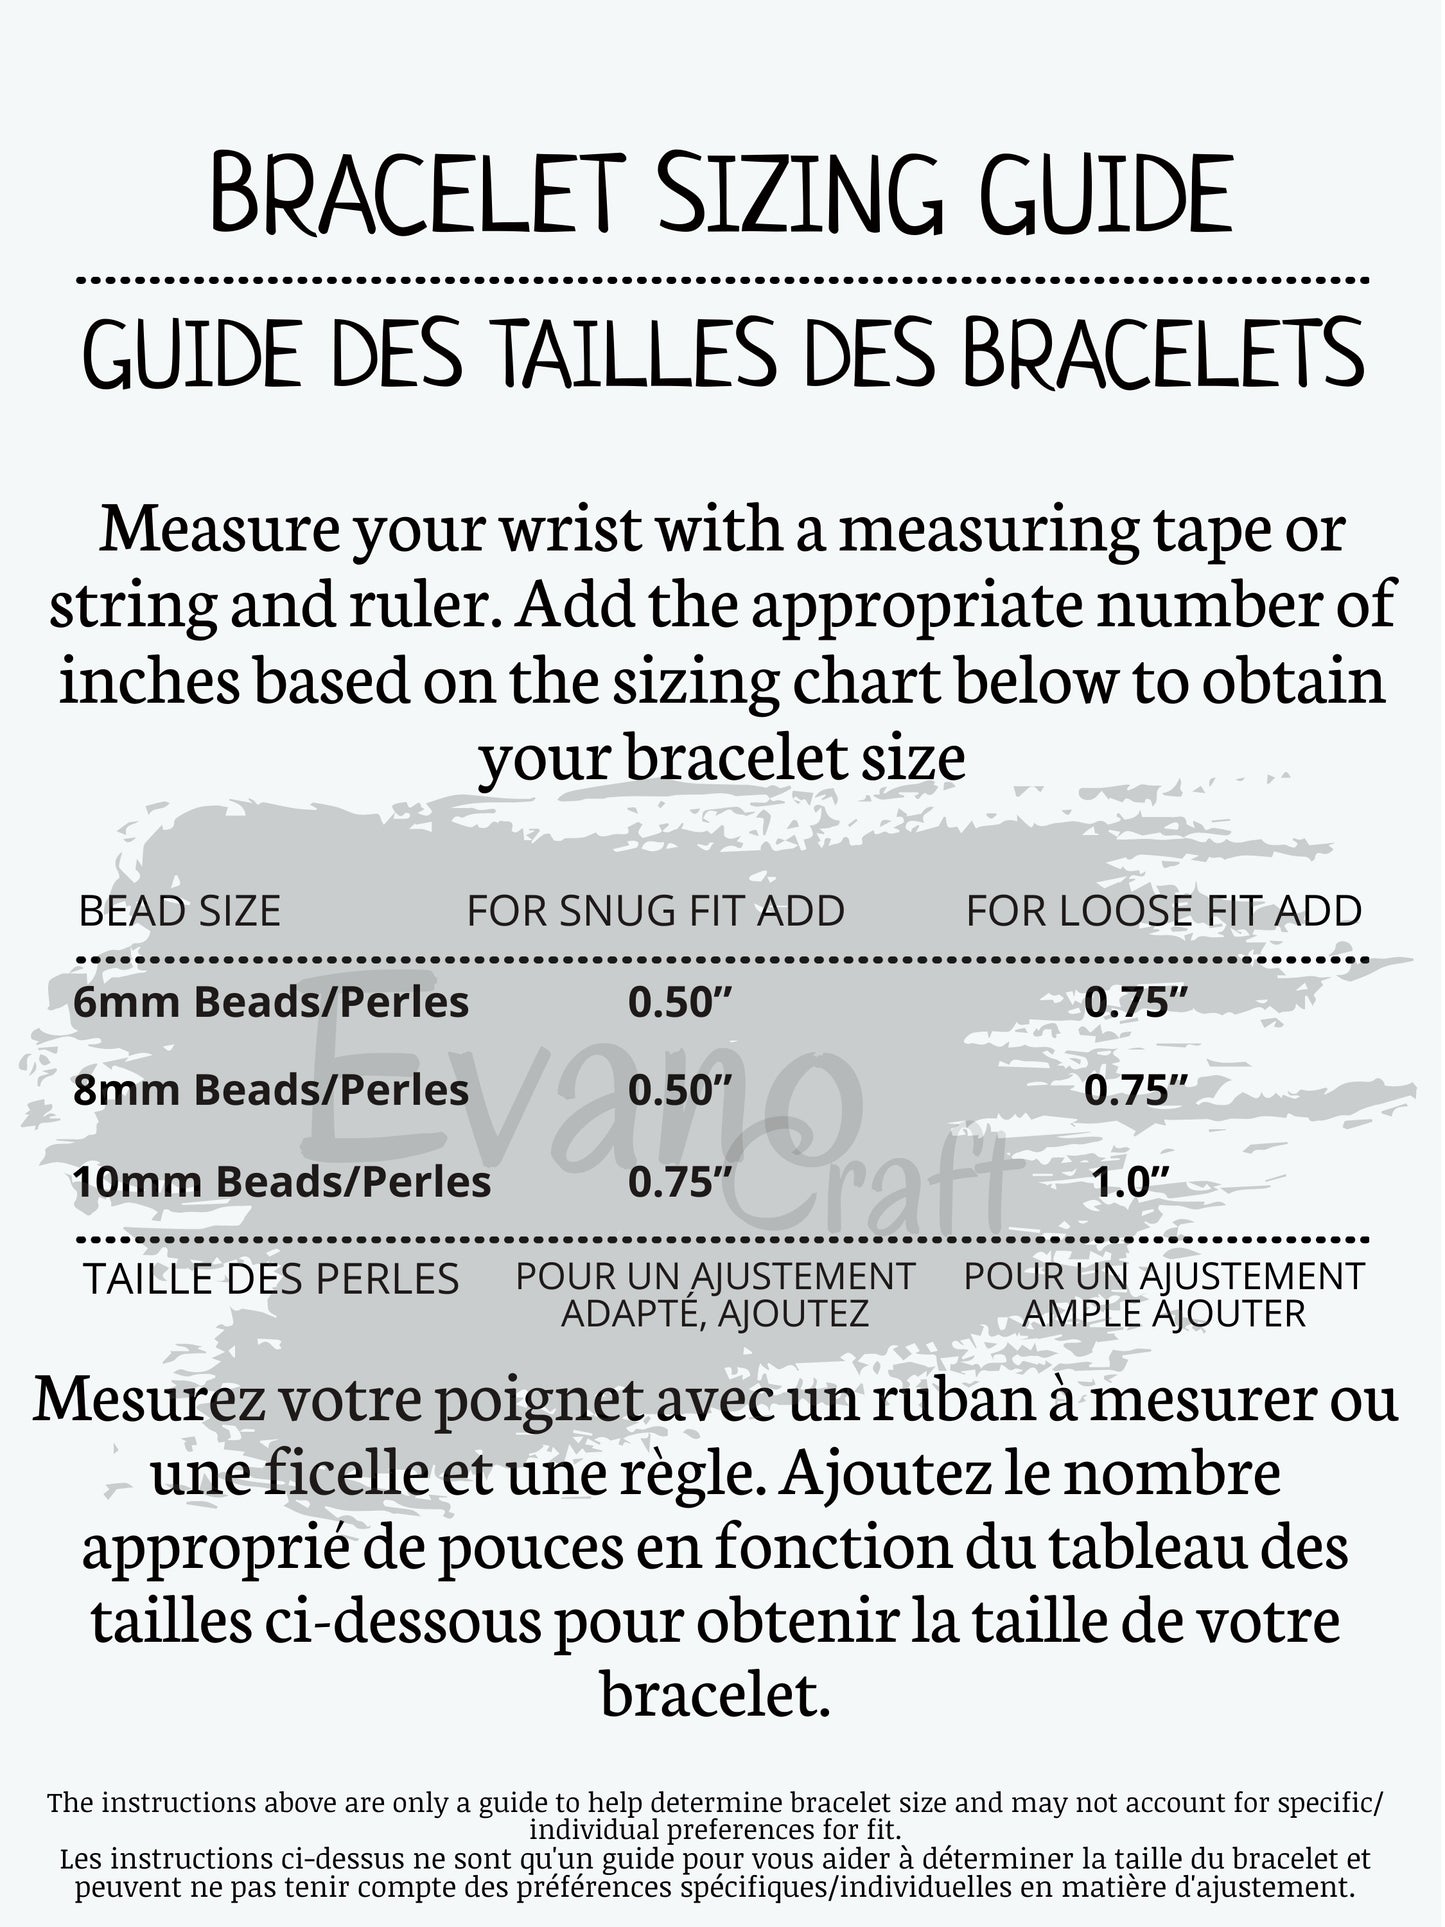 Bracelet aromathérapie 6.5mm/10mm ~ pierre de lave blanc ~ bracelet thérapeutique ~ bracelet huile essentielle